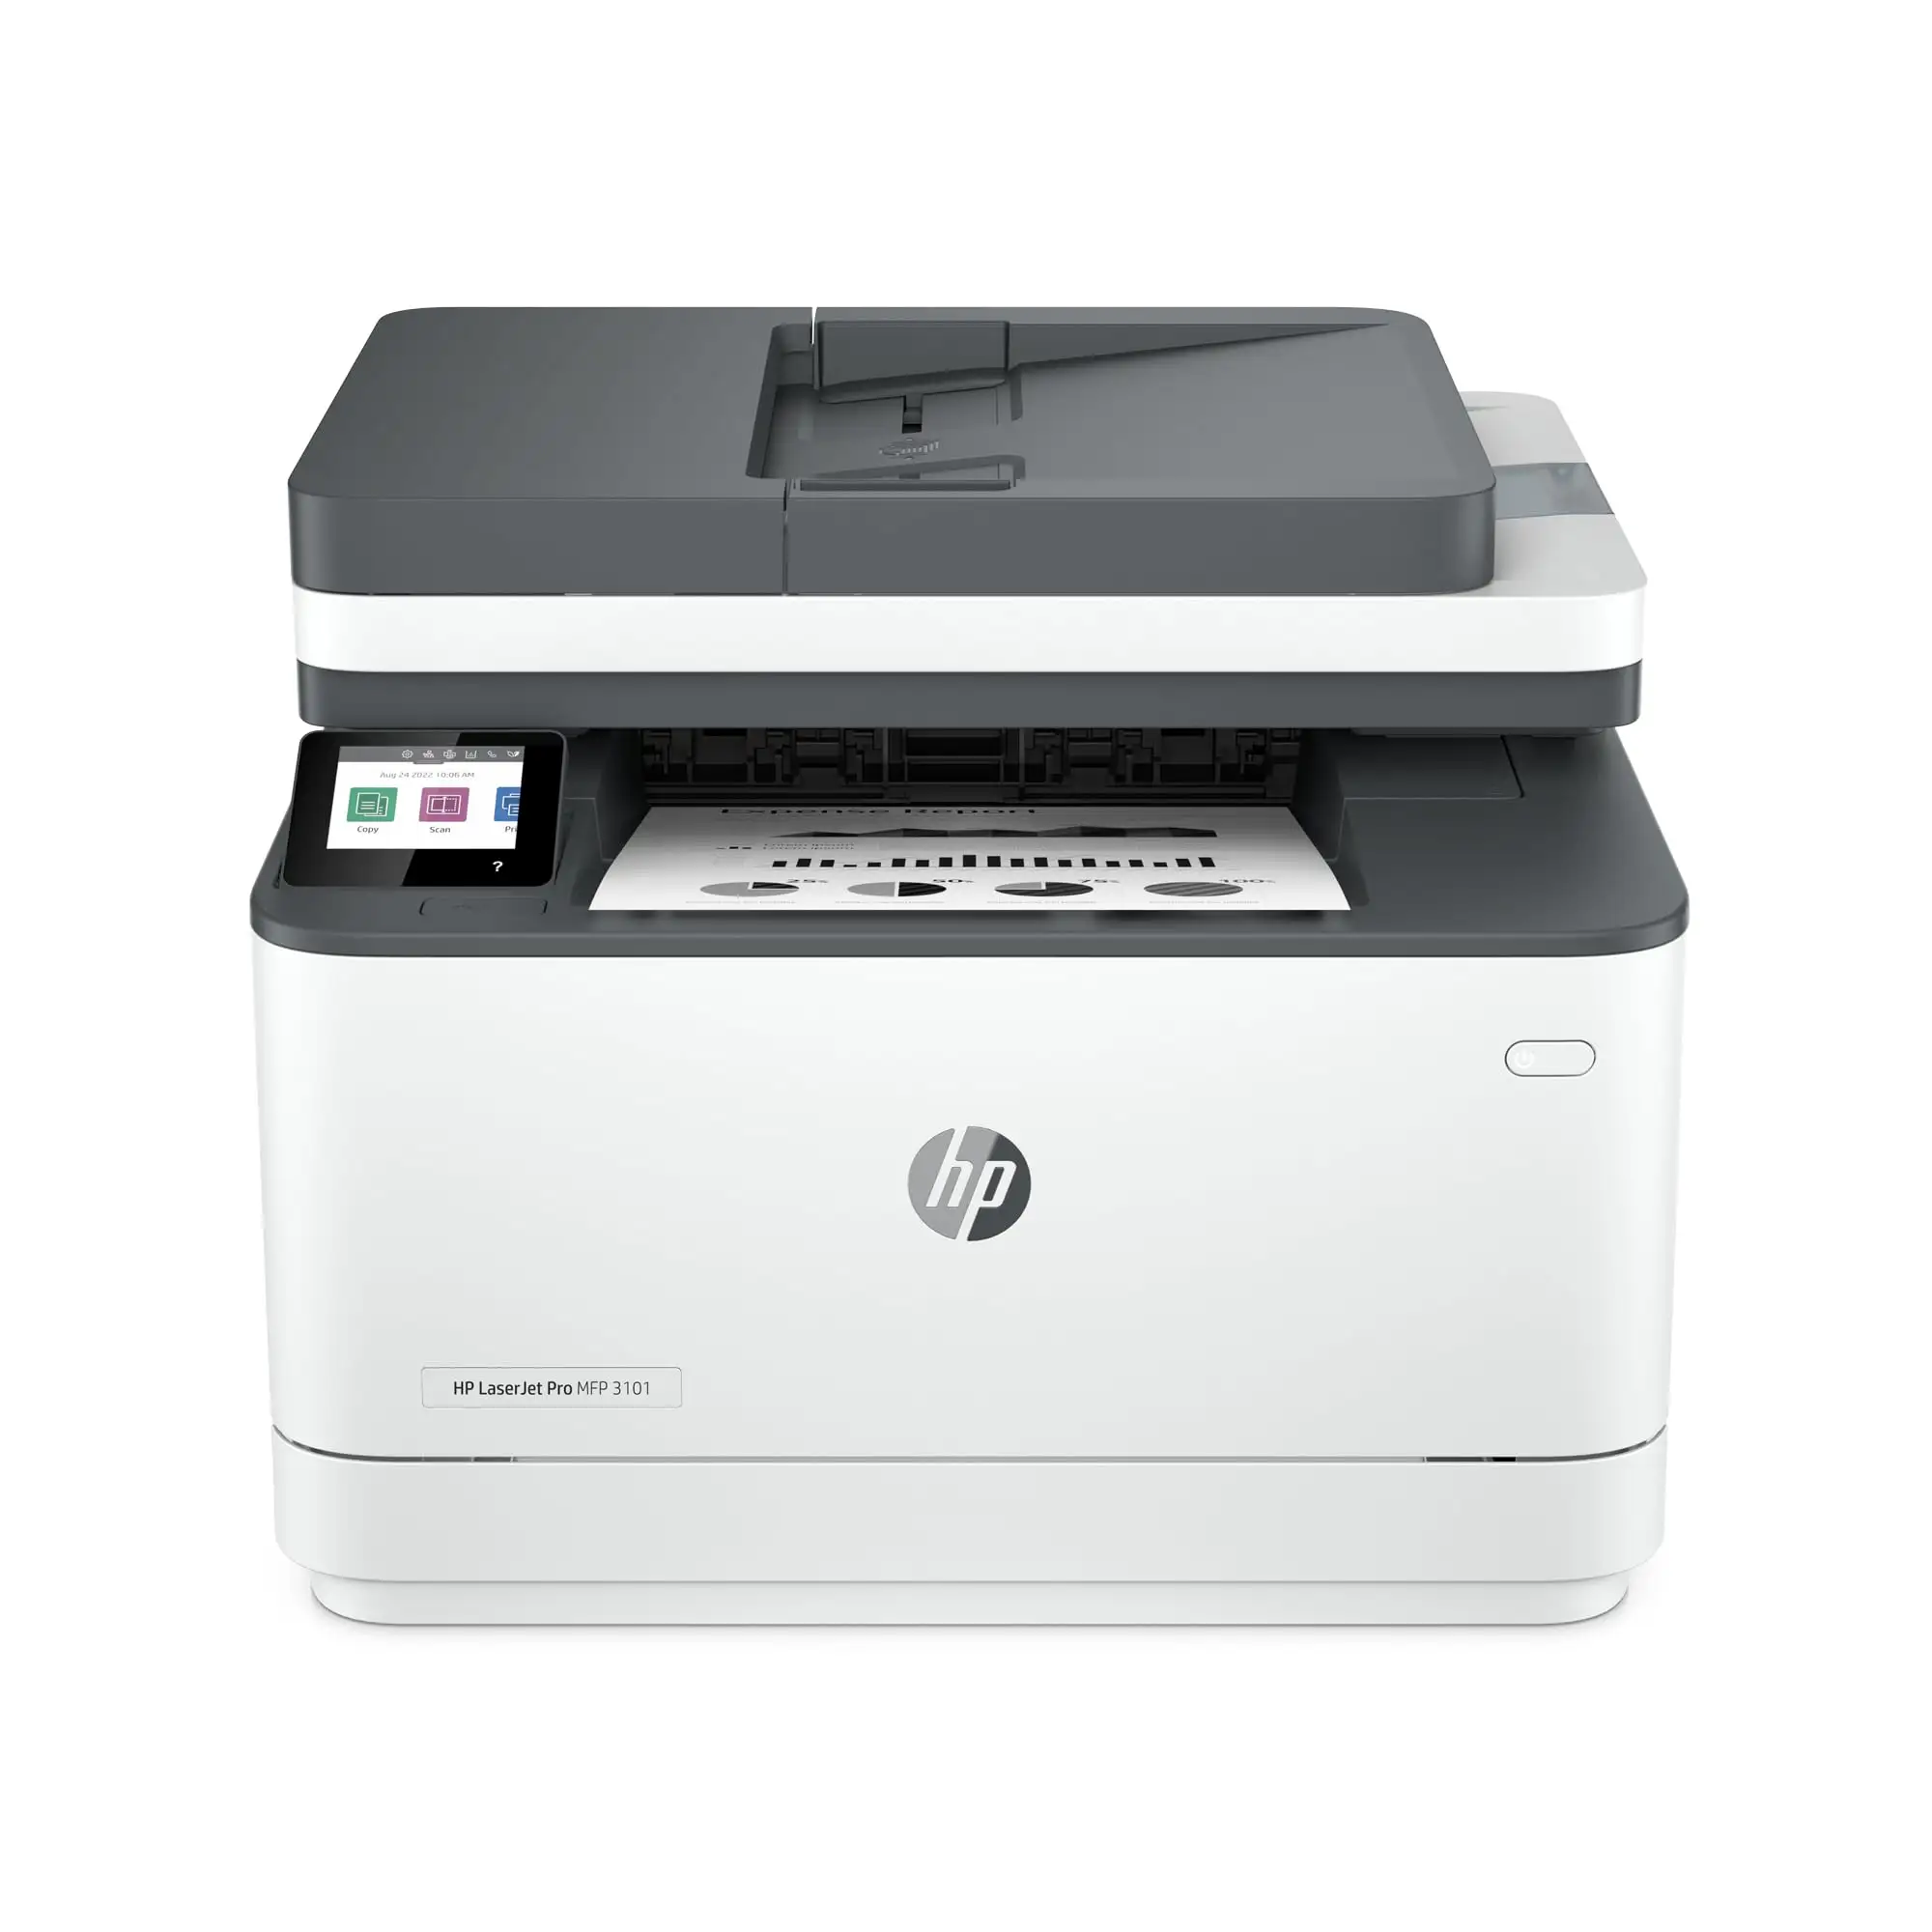 Impresora monocromática todo en uno LaserJet Pro MFP 3101fdw Impresora inalámbrica en blanco y negro para oficina